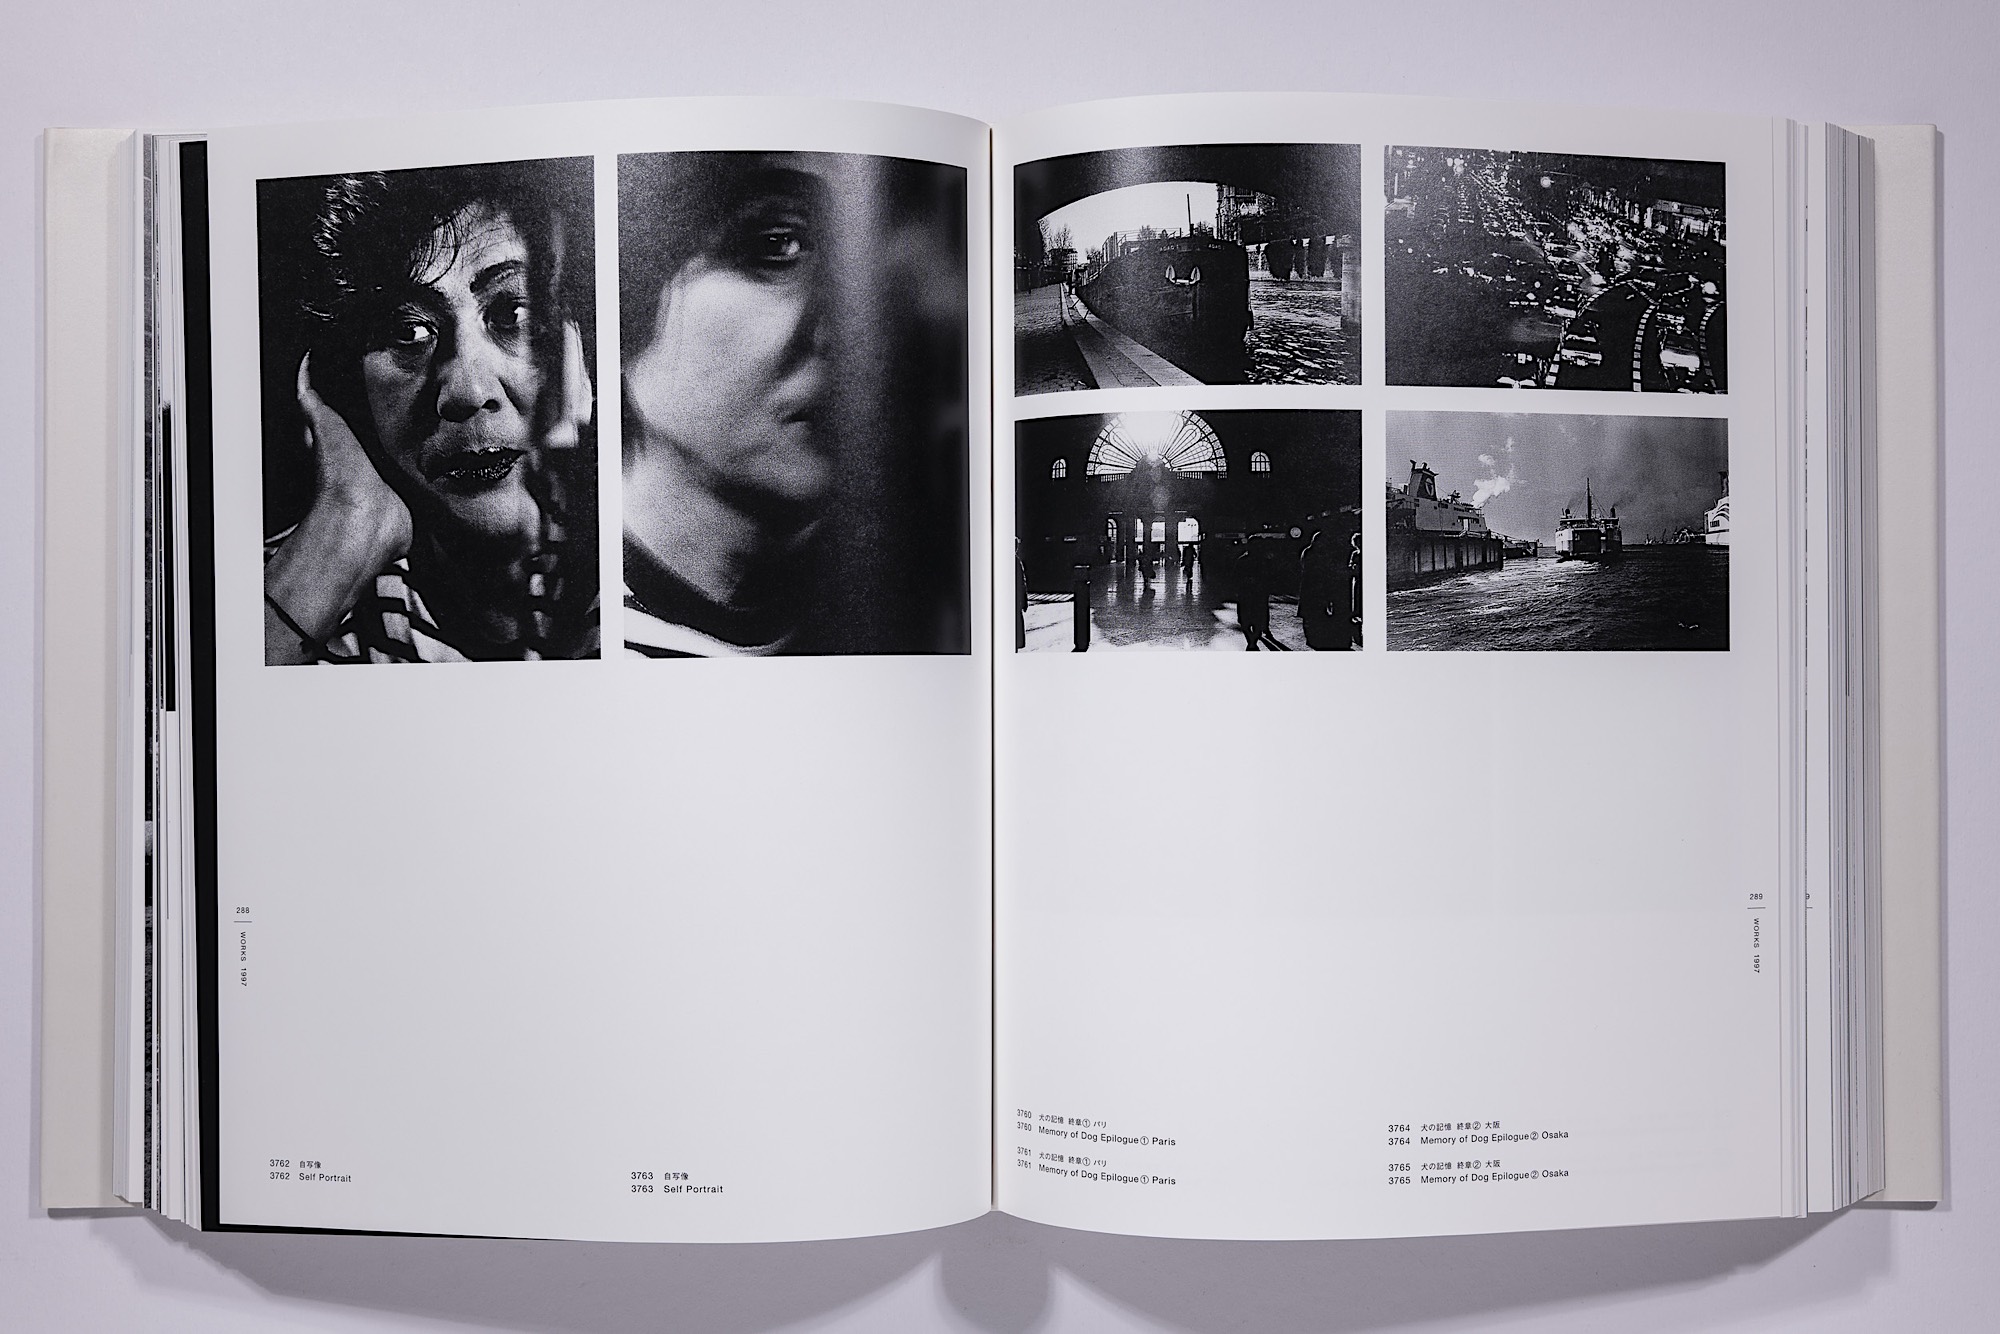 Daido Moriyama - The Complete Works of Daido Moriyama Image 33